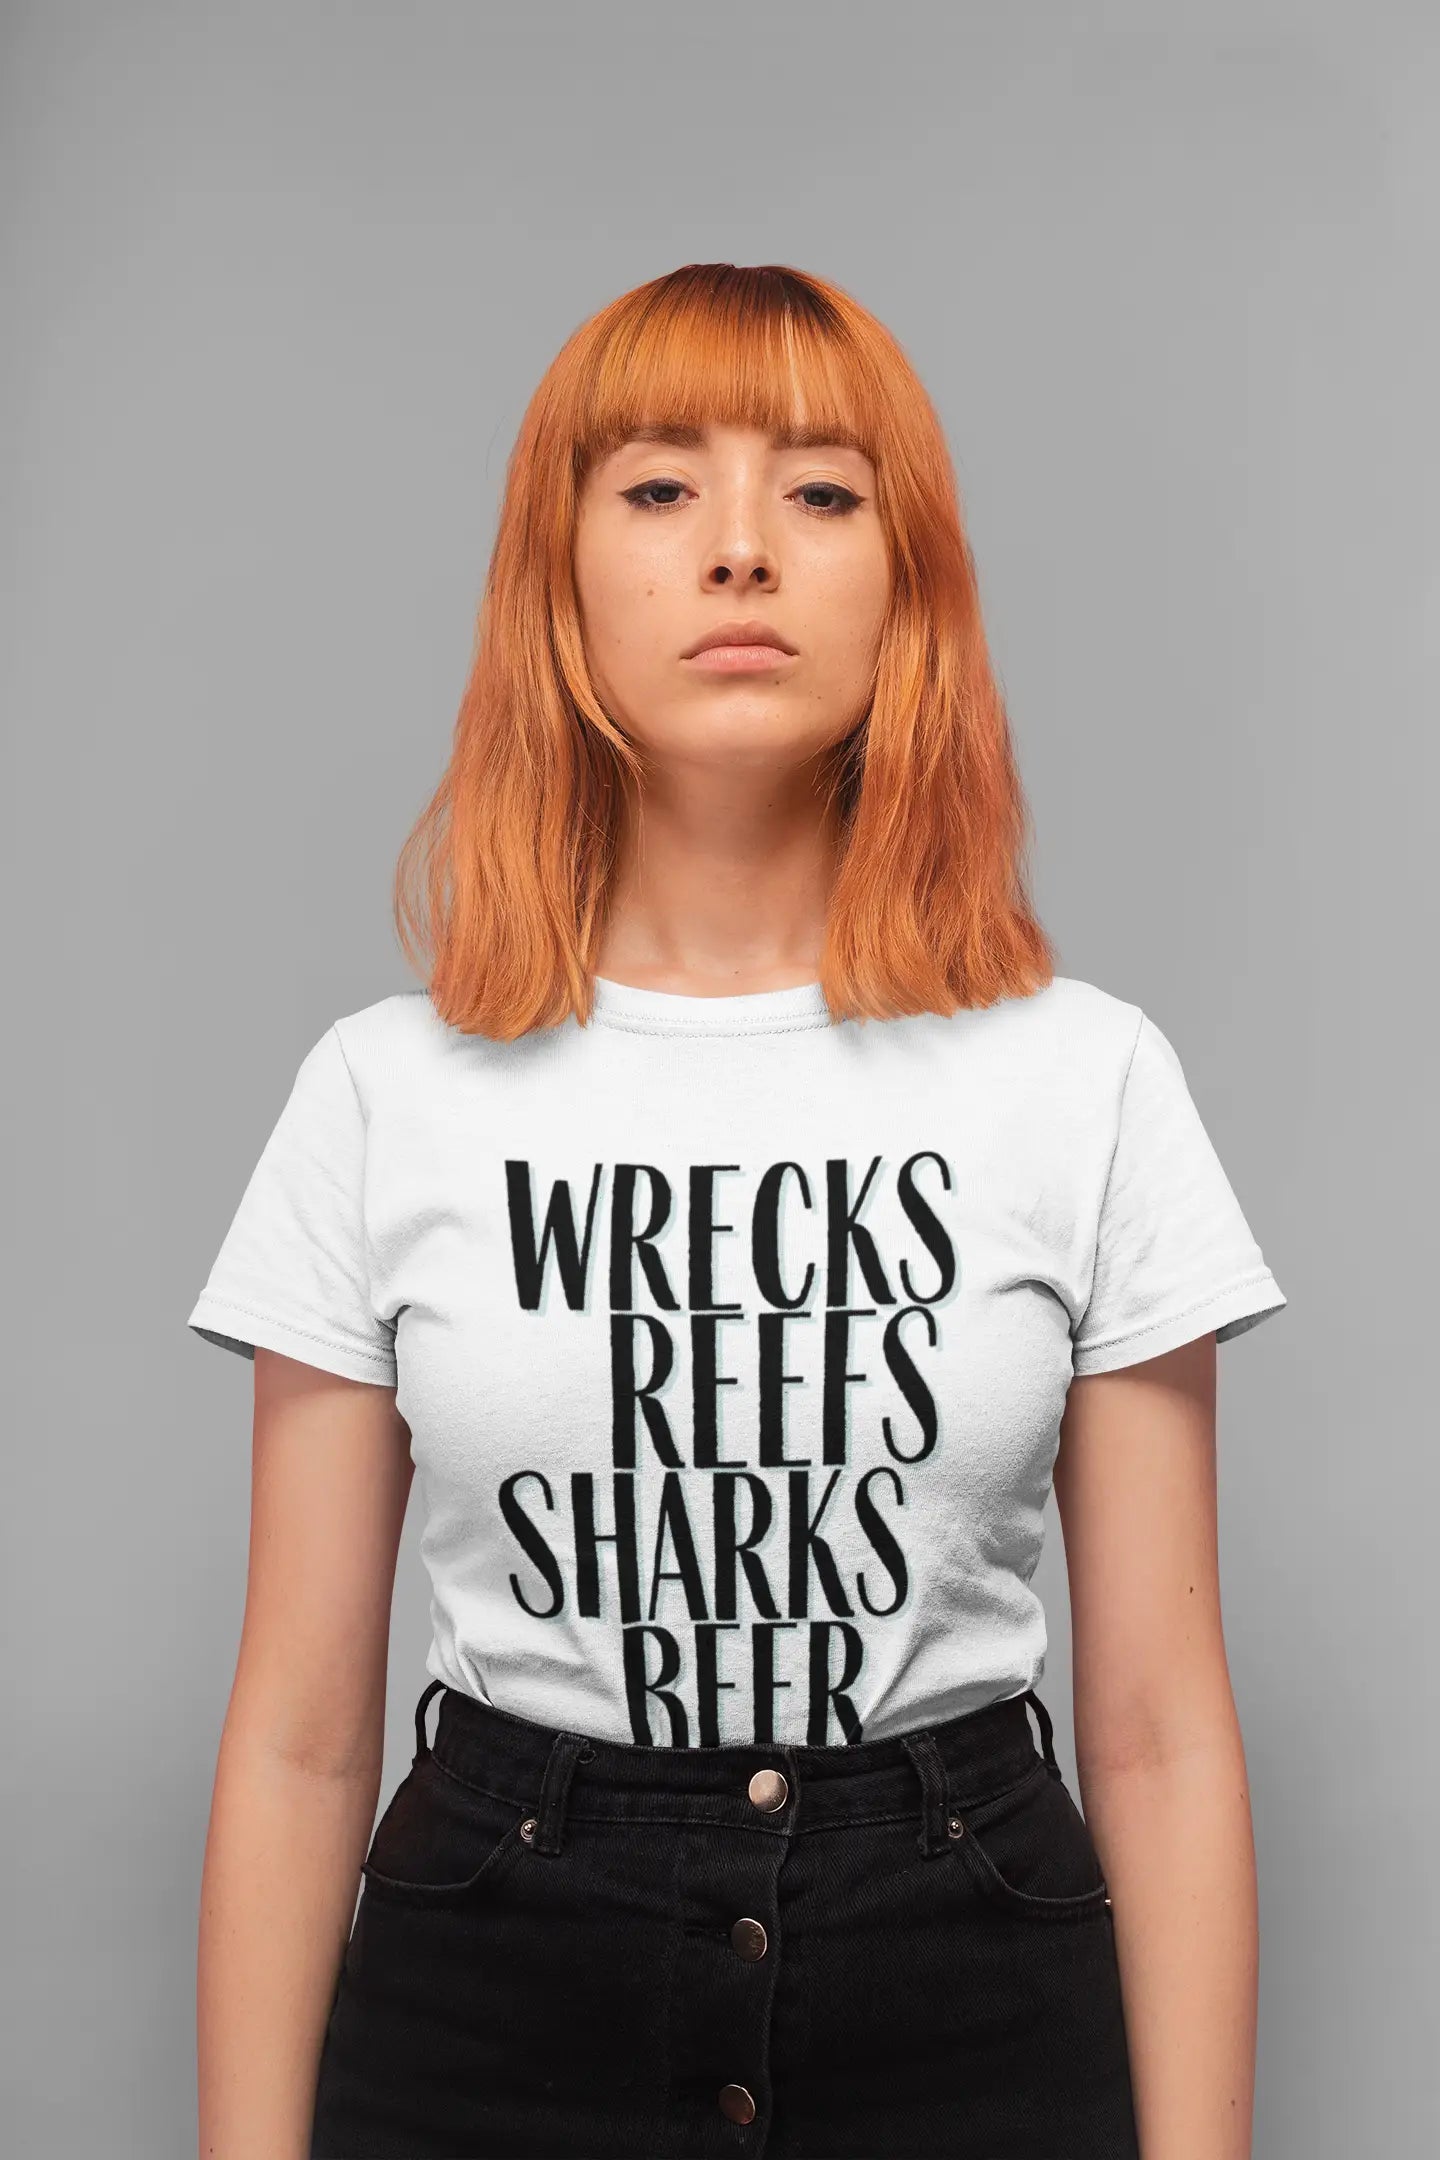 wrecks reefs sharks beer divers t-shirt woman